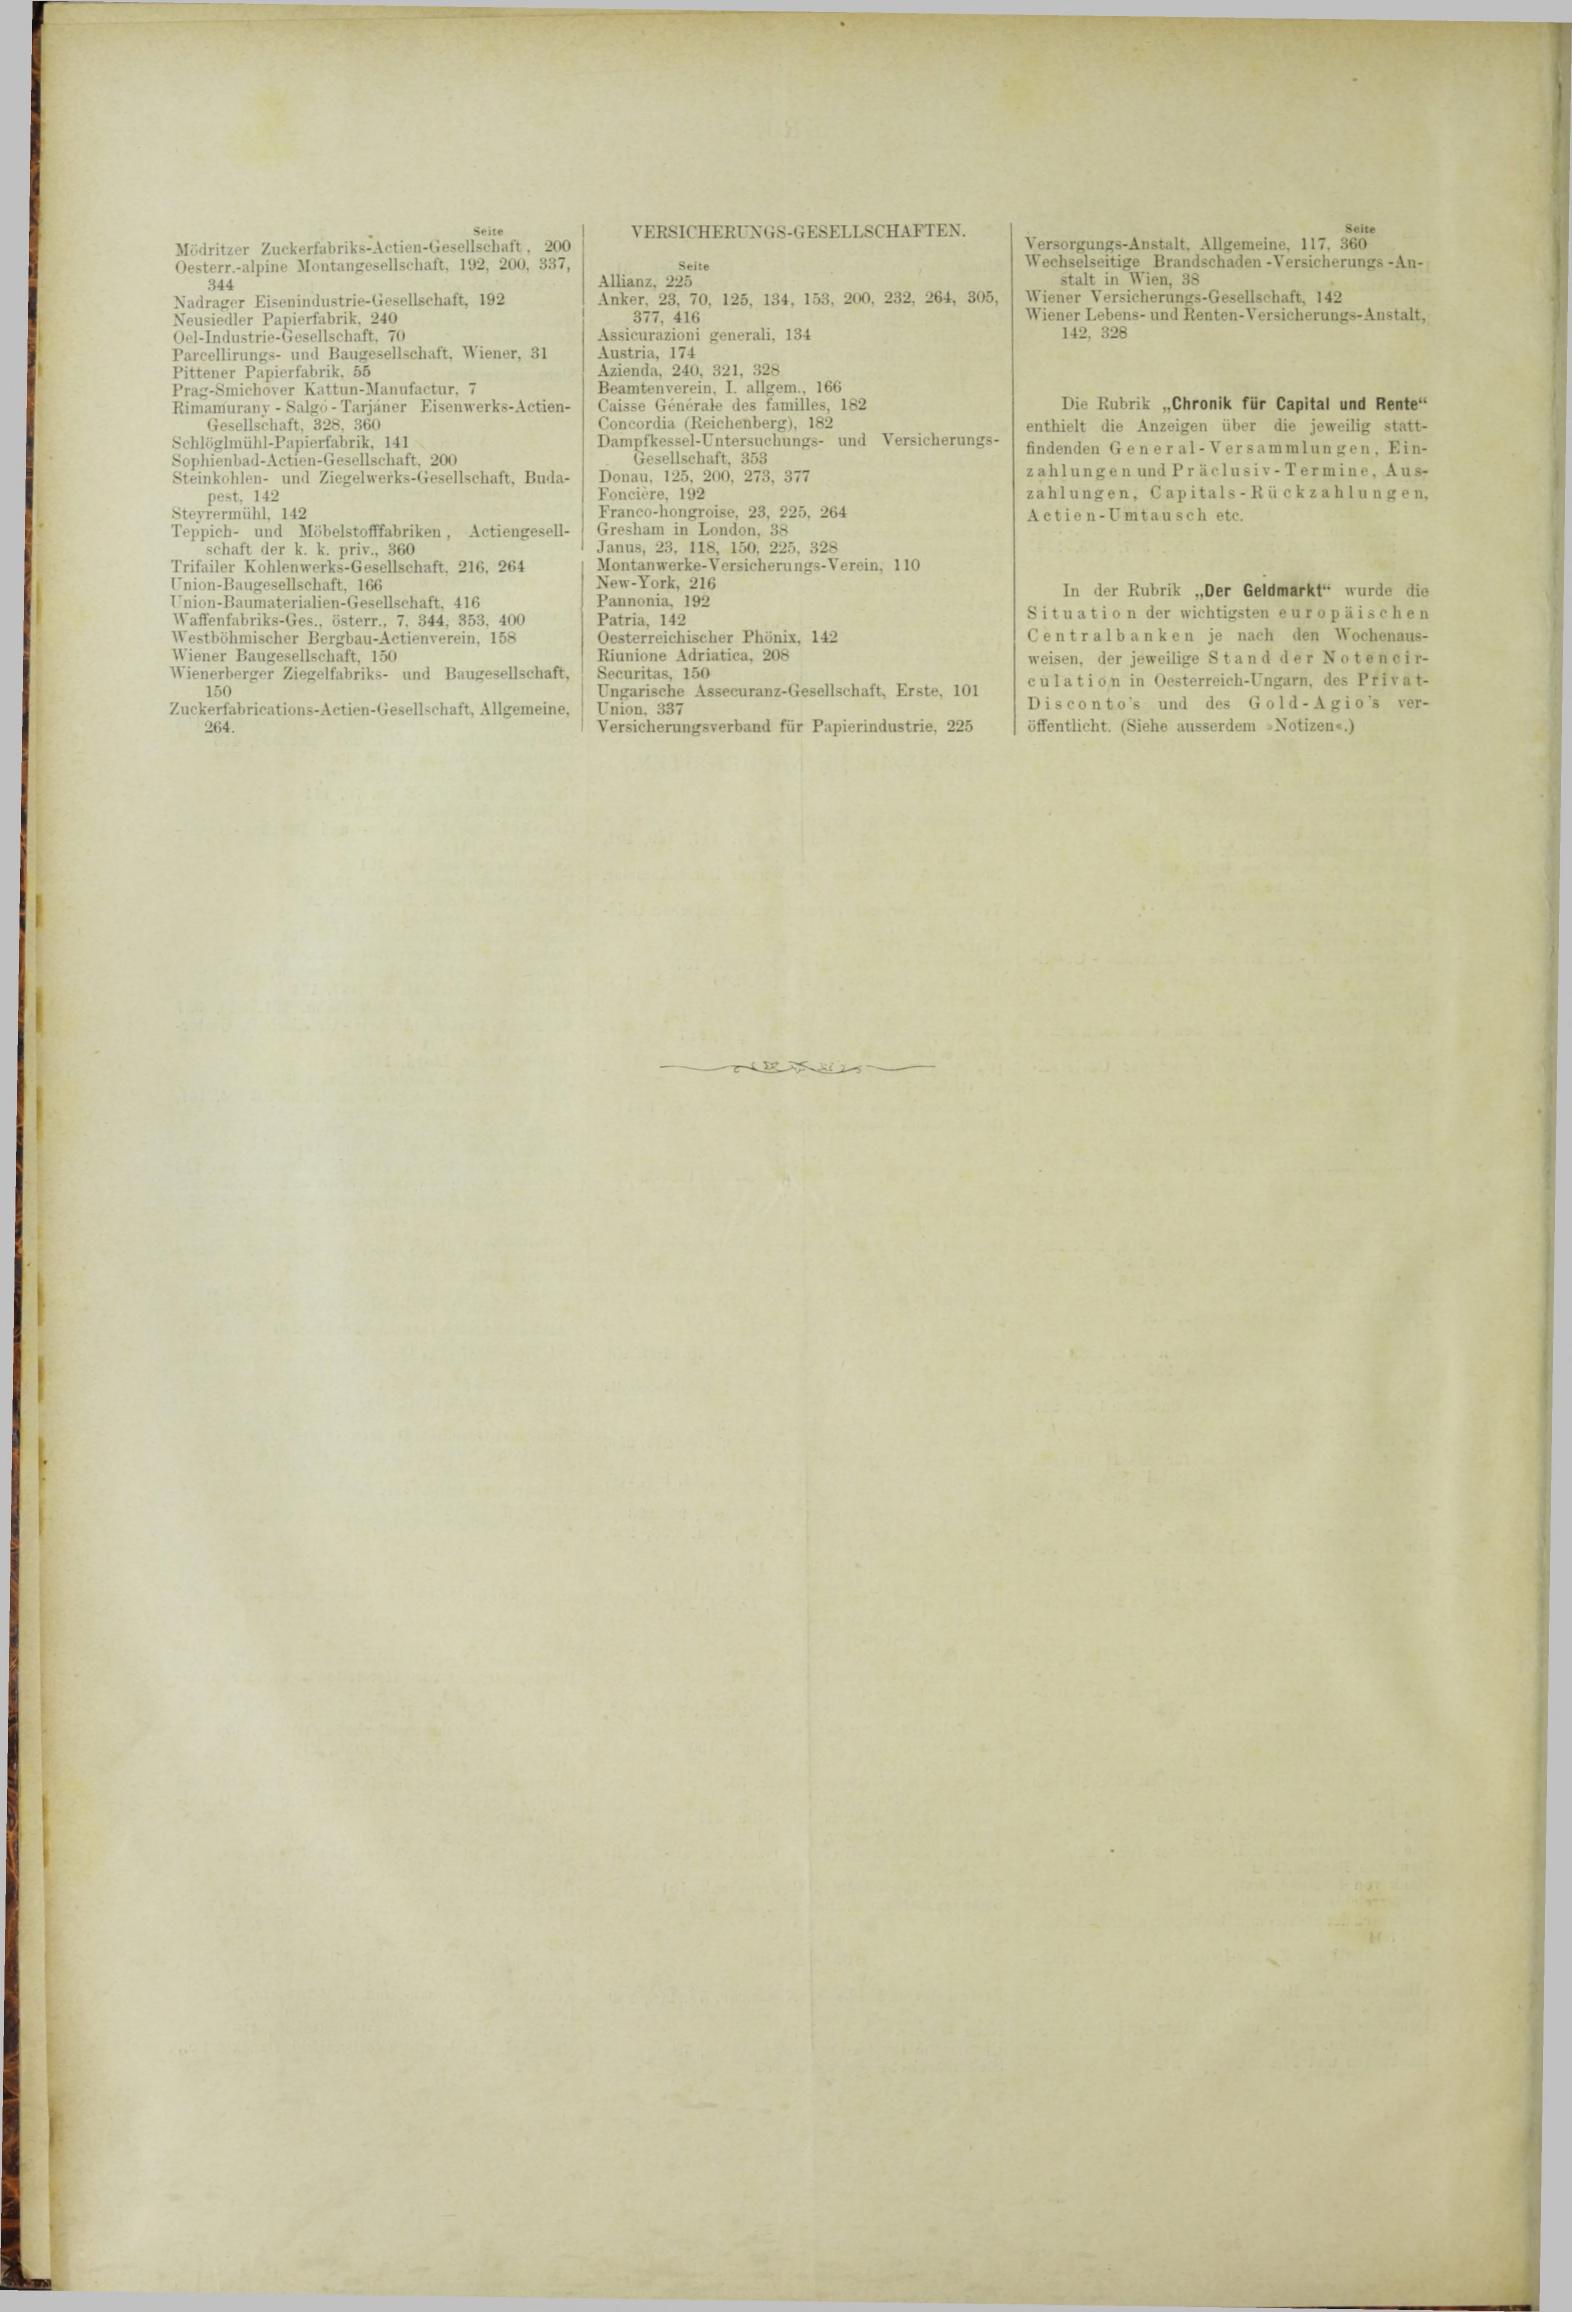 Der Tresor 03.05.1883 - Seite 12